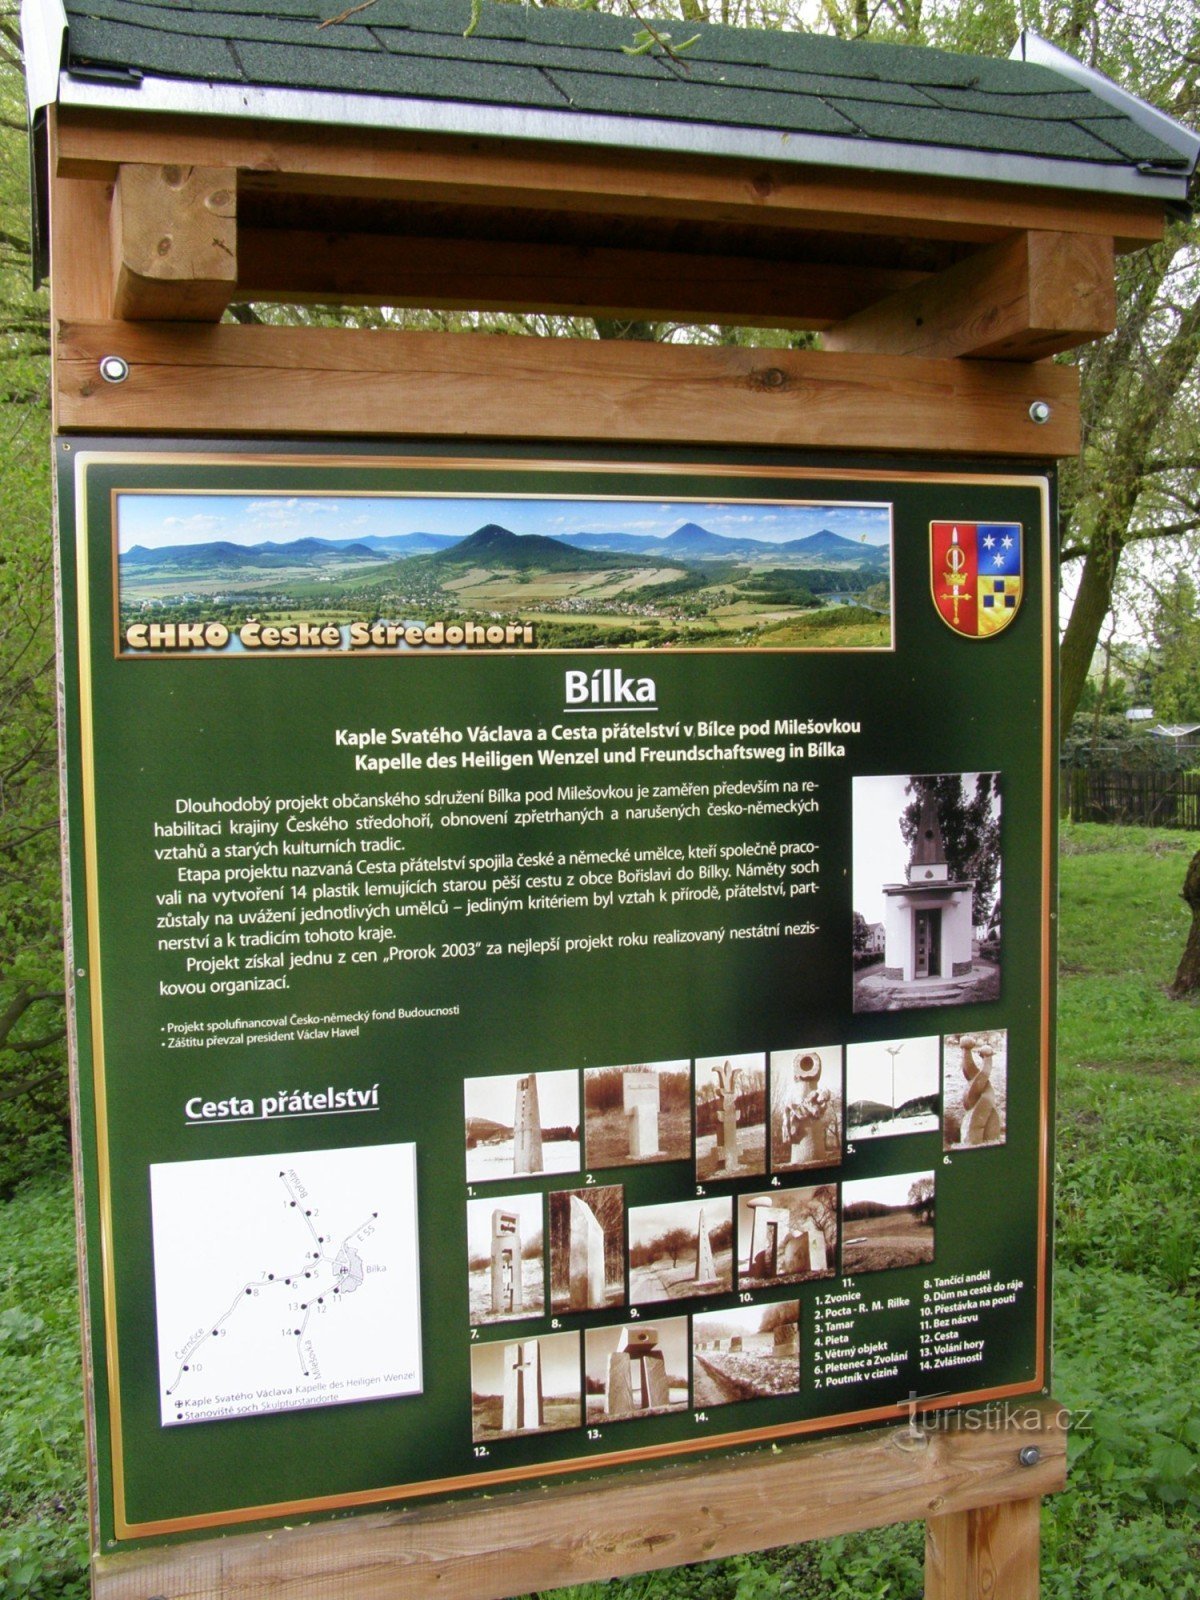 Bílka - quadro informativo sobre as esculturas que ladeiam o caminho para Milešovka